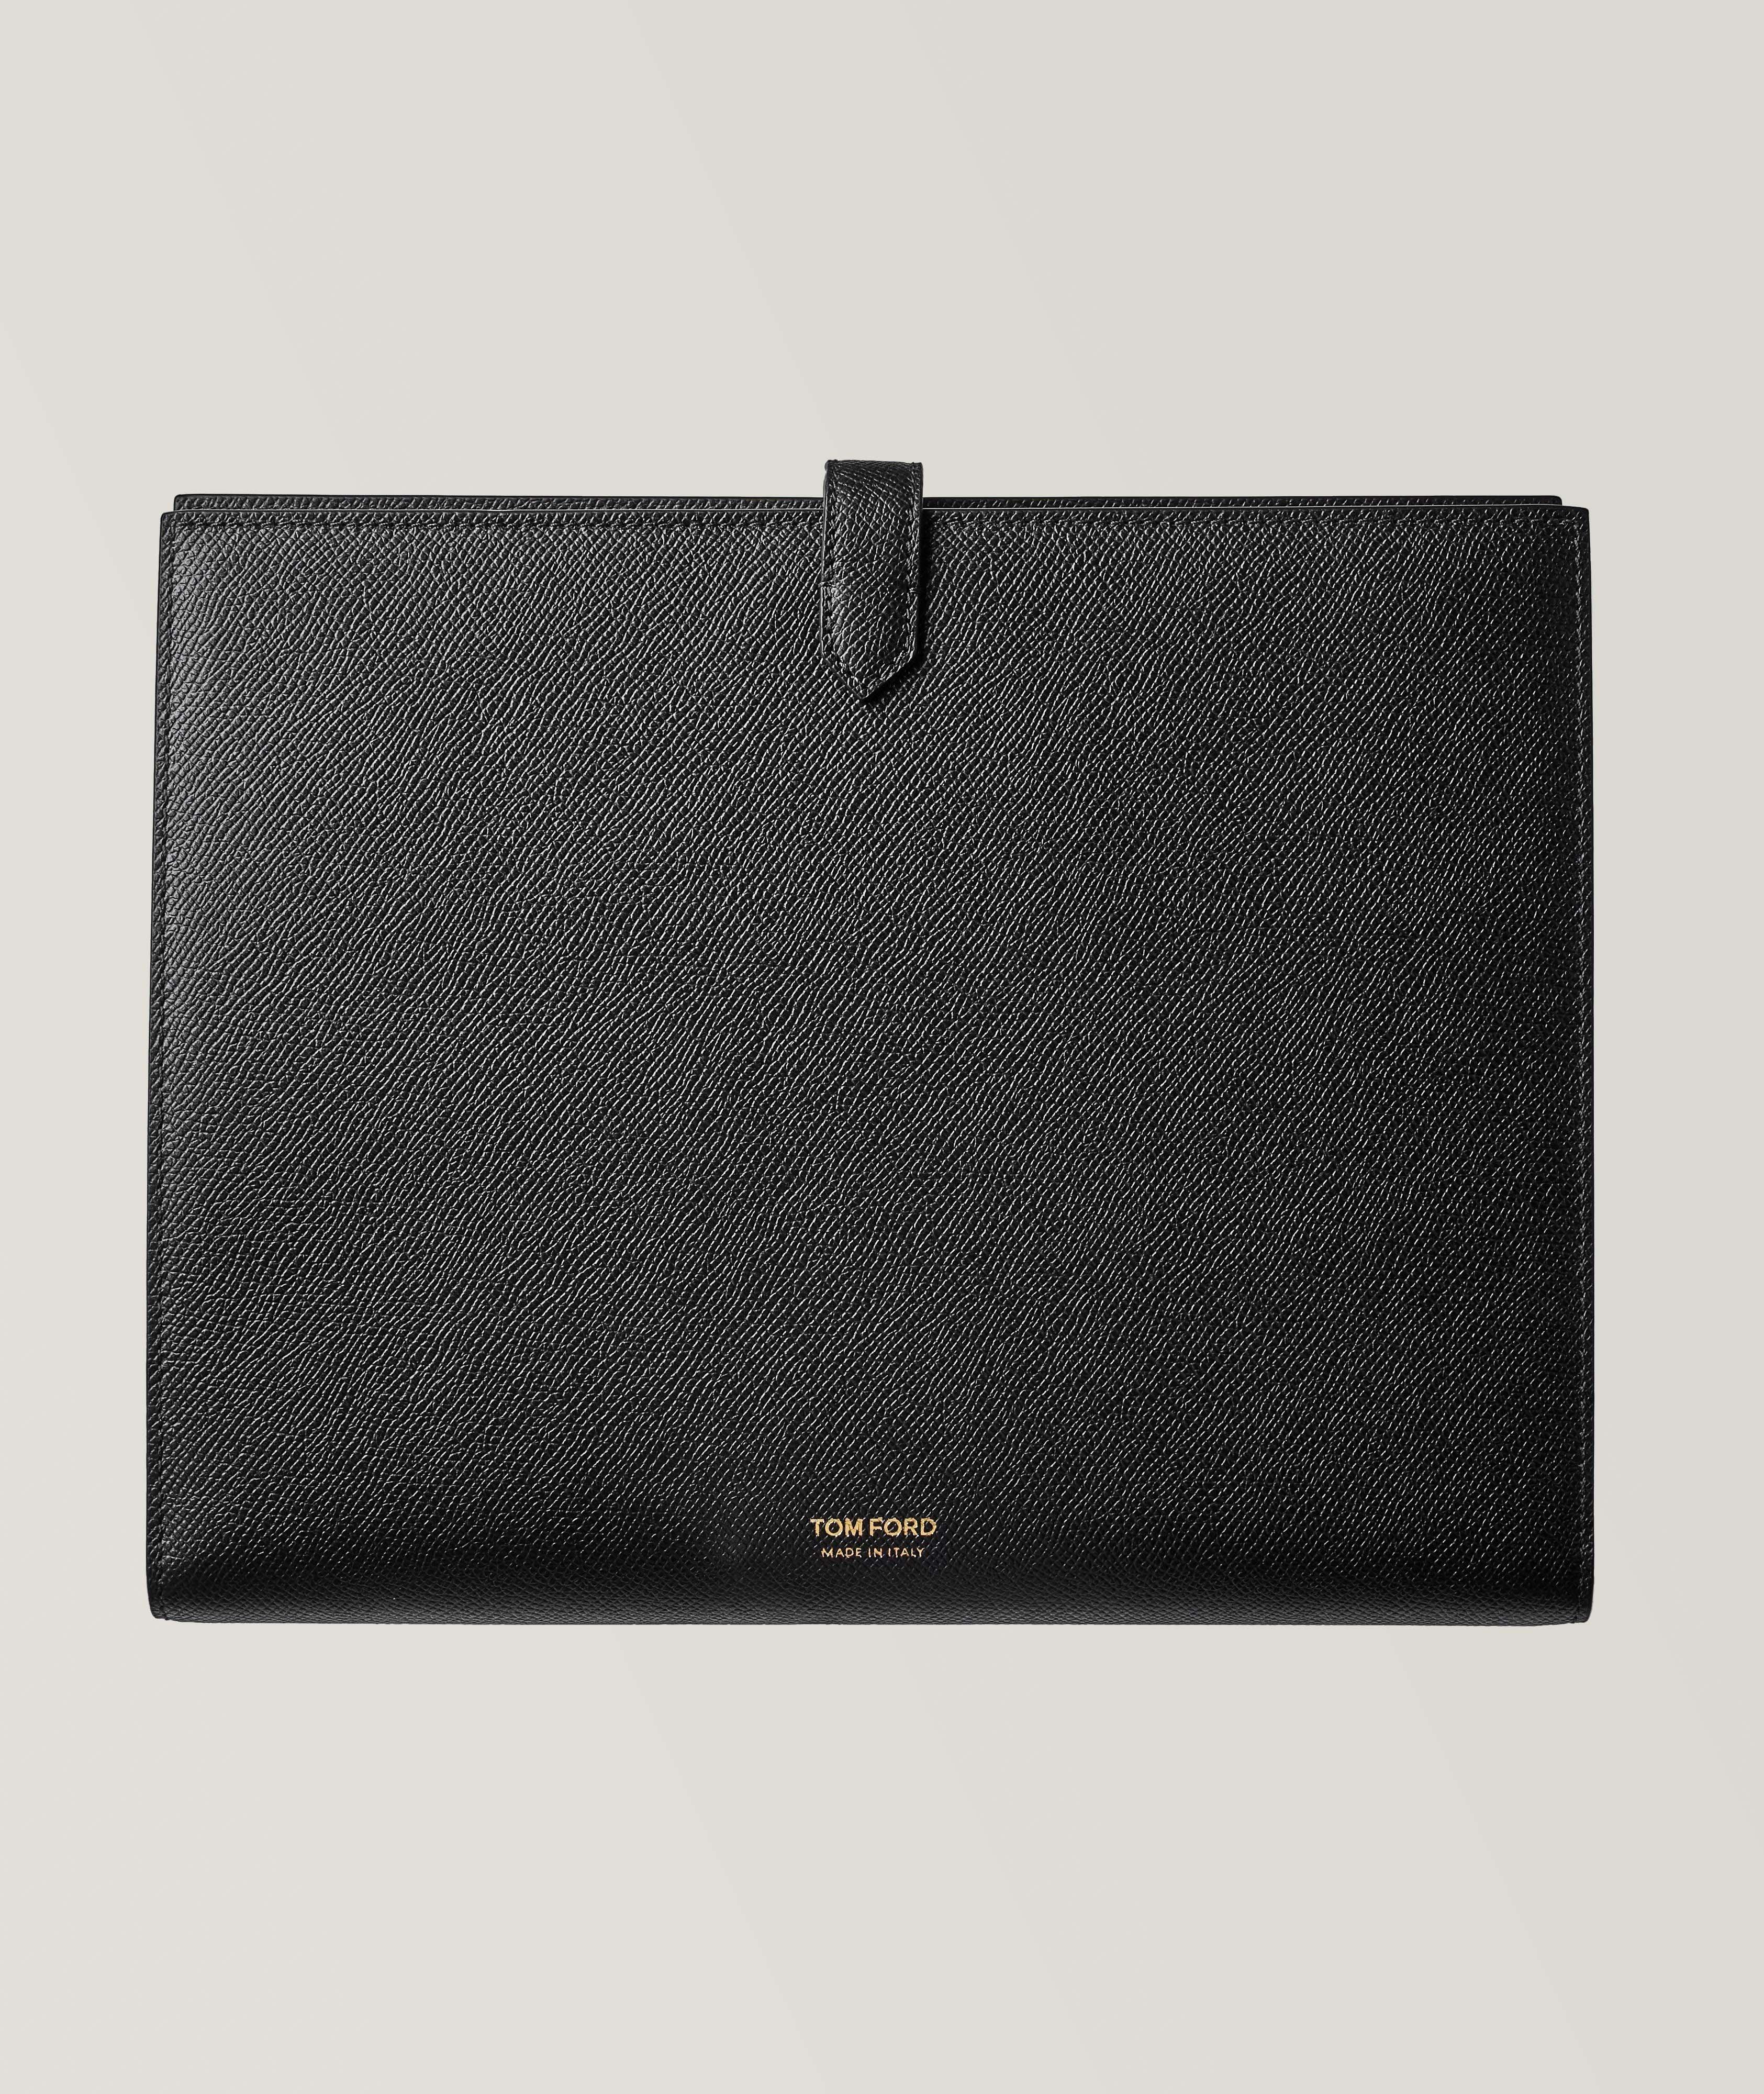 Grain Leather Laptop Case image 1